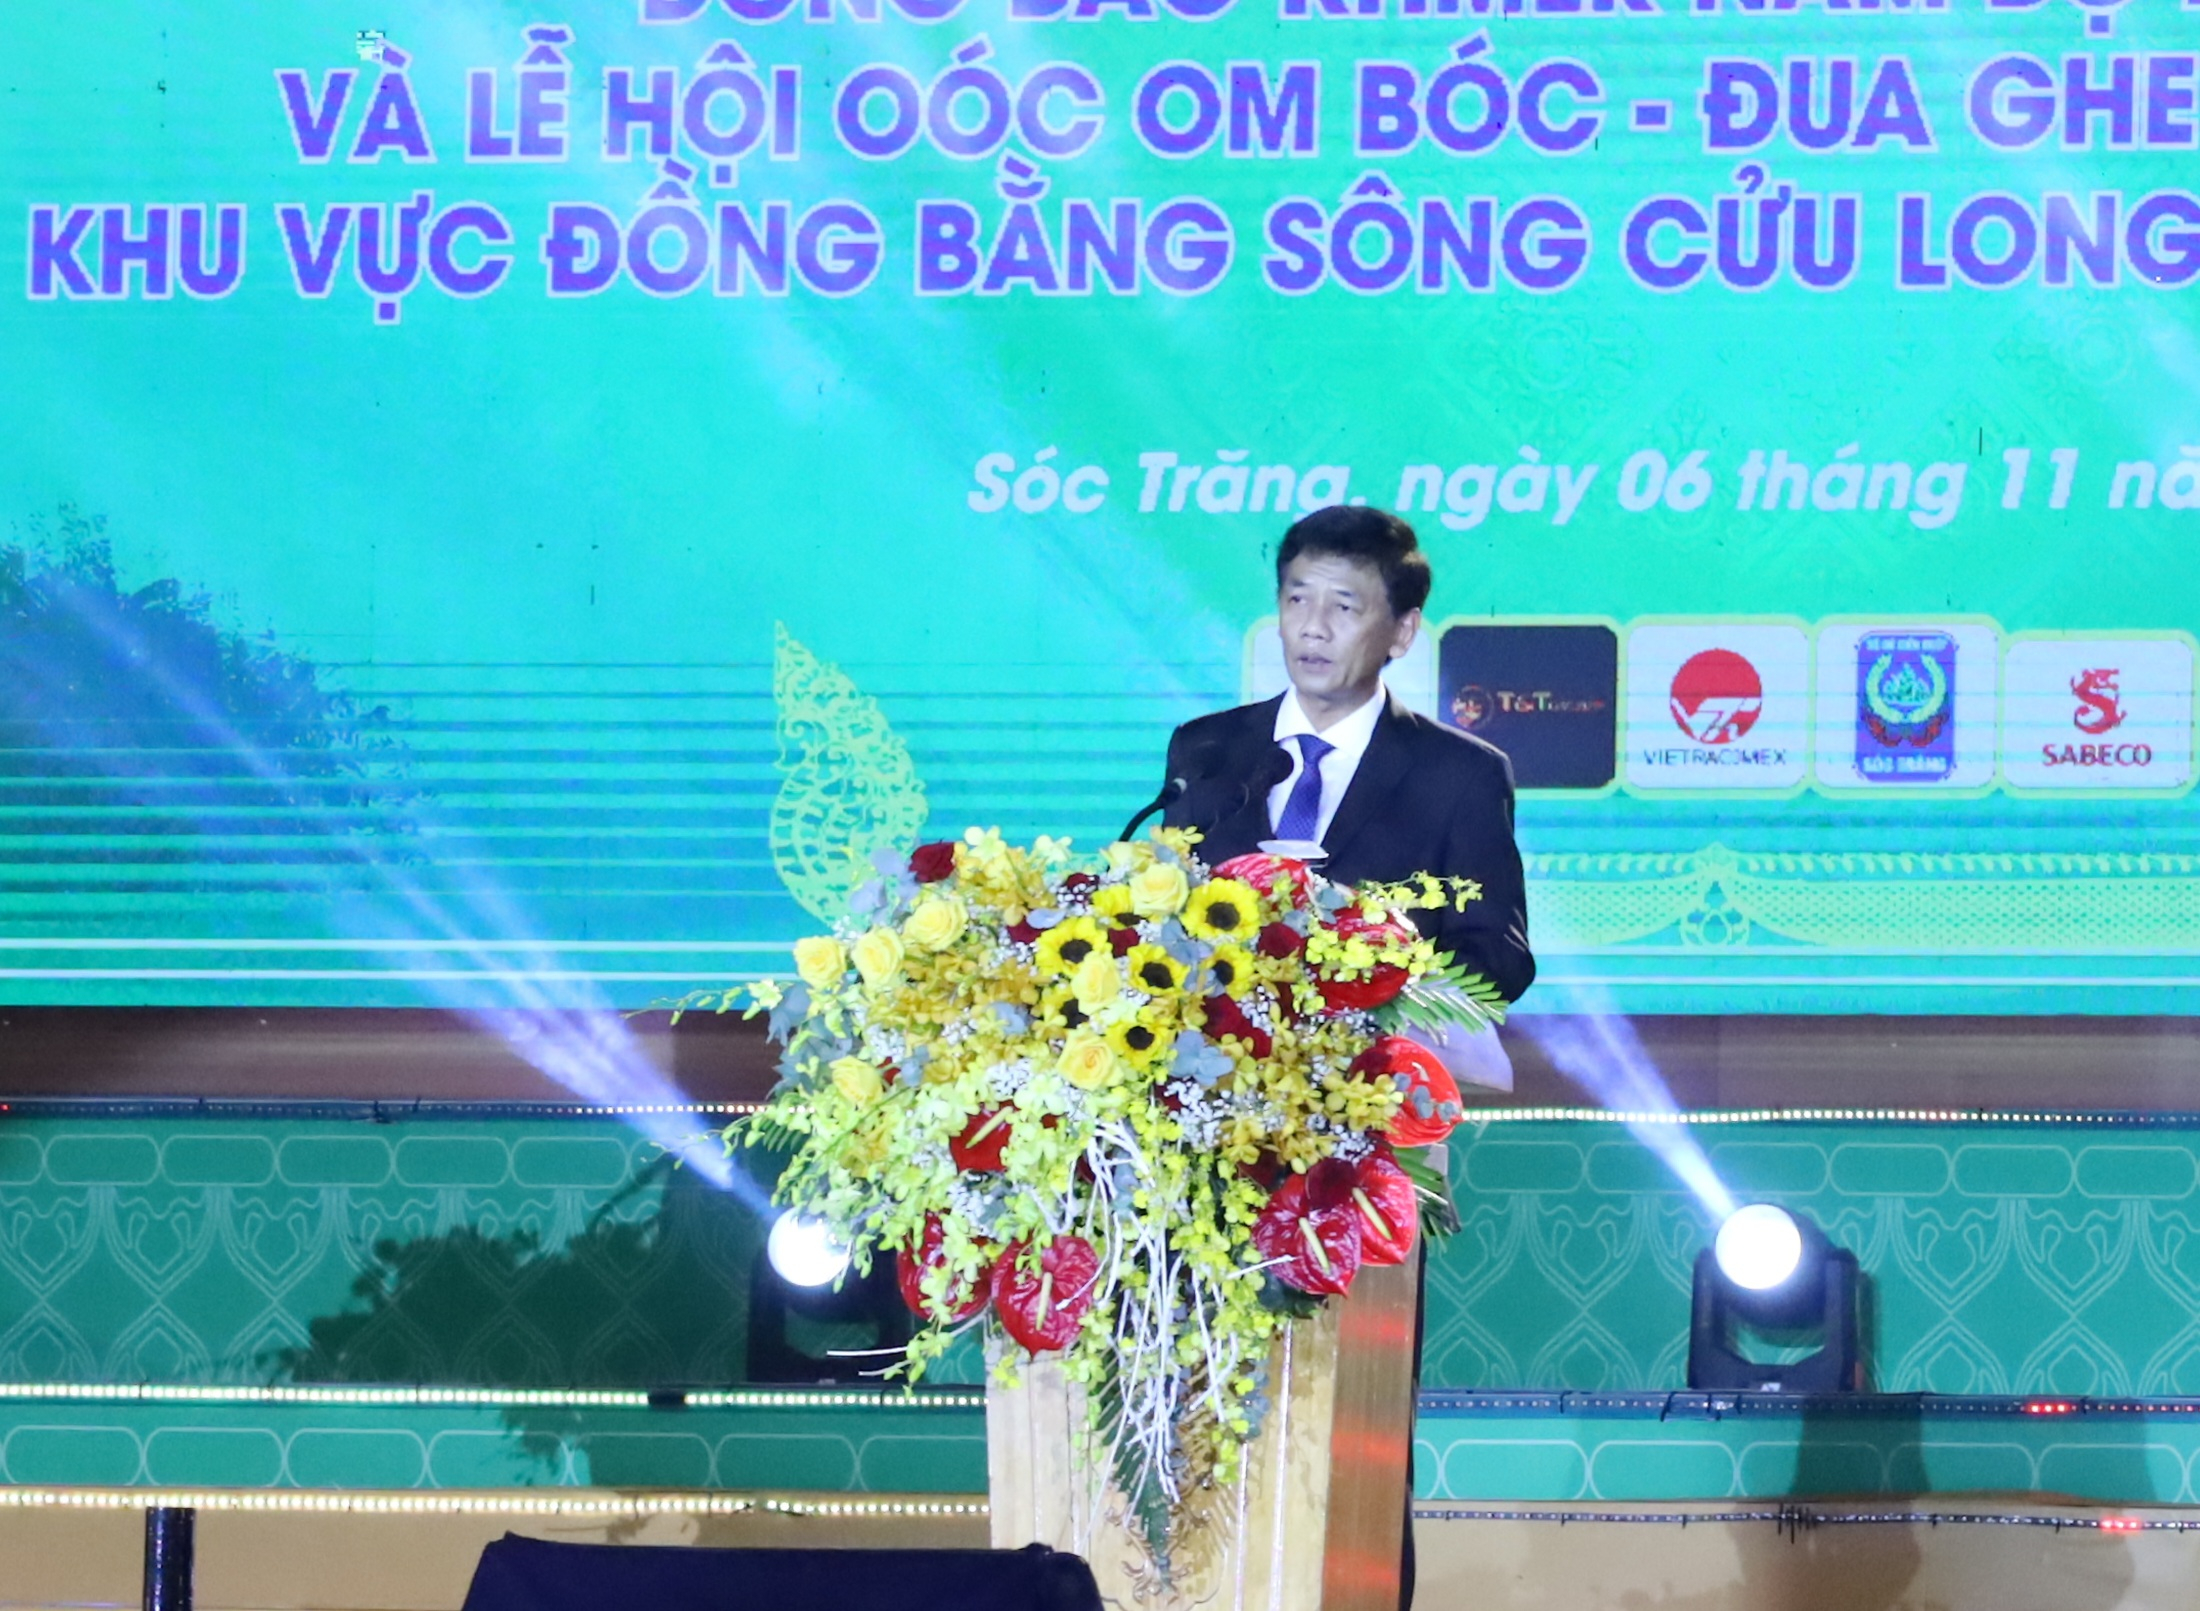 Ông Lâm Văn Mẫn - Ủy viên BCH Trung ương Đảng, Bí thư Tỉnh ủy tỉnh Sóc Trăng phát biểu đáp từ tại lễ khai mạc ngày hội.